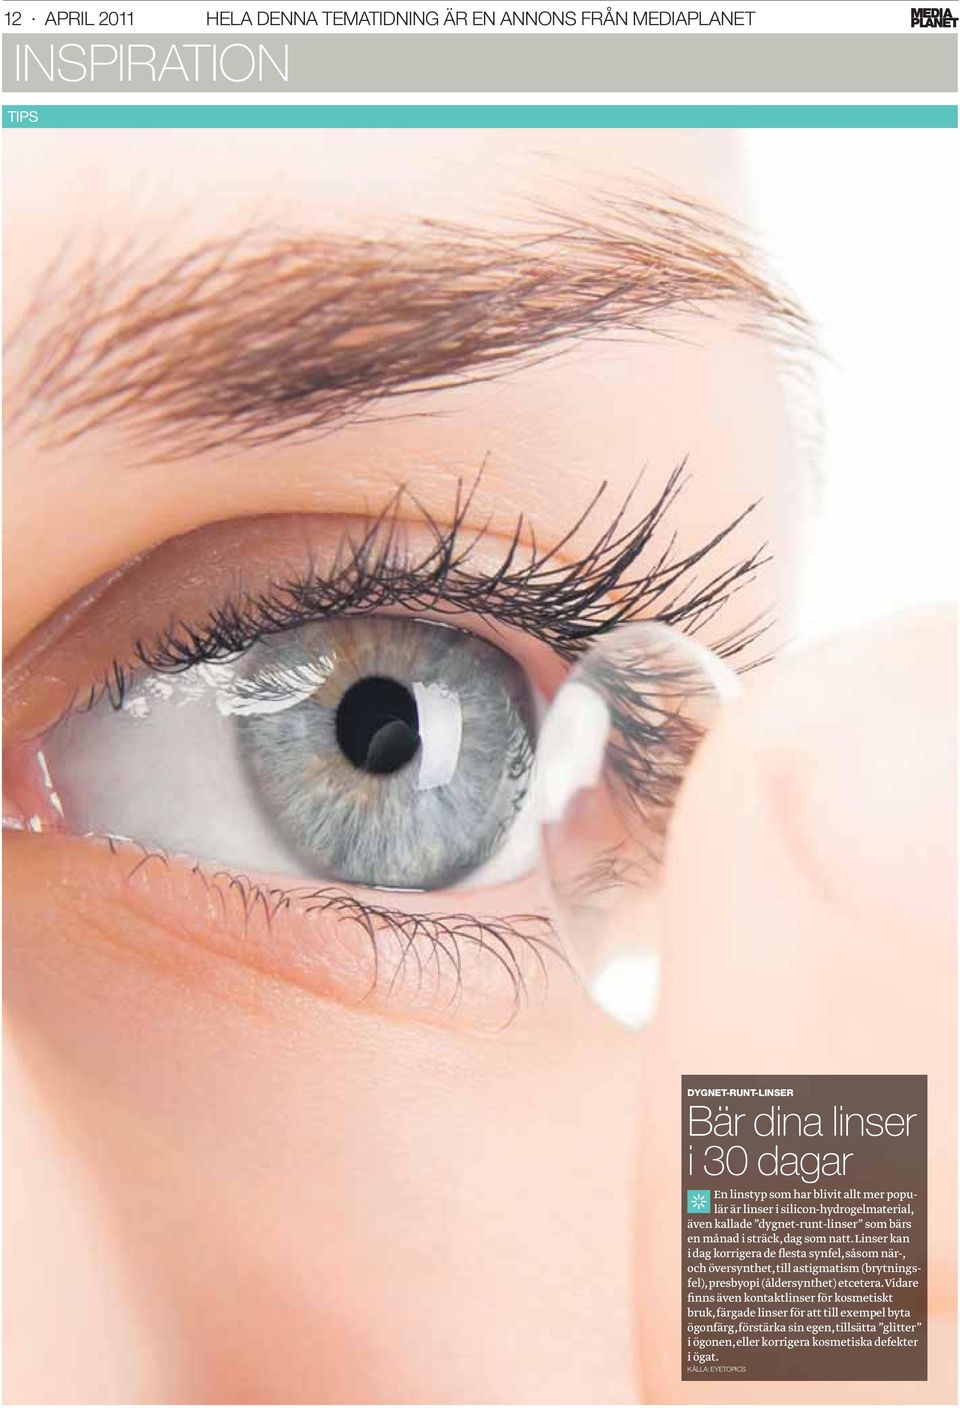 Linser kan i dag korrigera de flesta synfel, såsom när-, och översynthet, till astigmatism (brytningsfel), presbyopi (åldersynthet) etcetera.